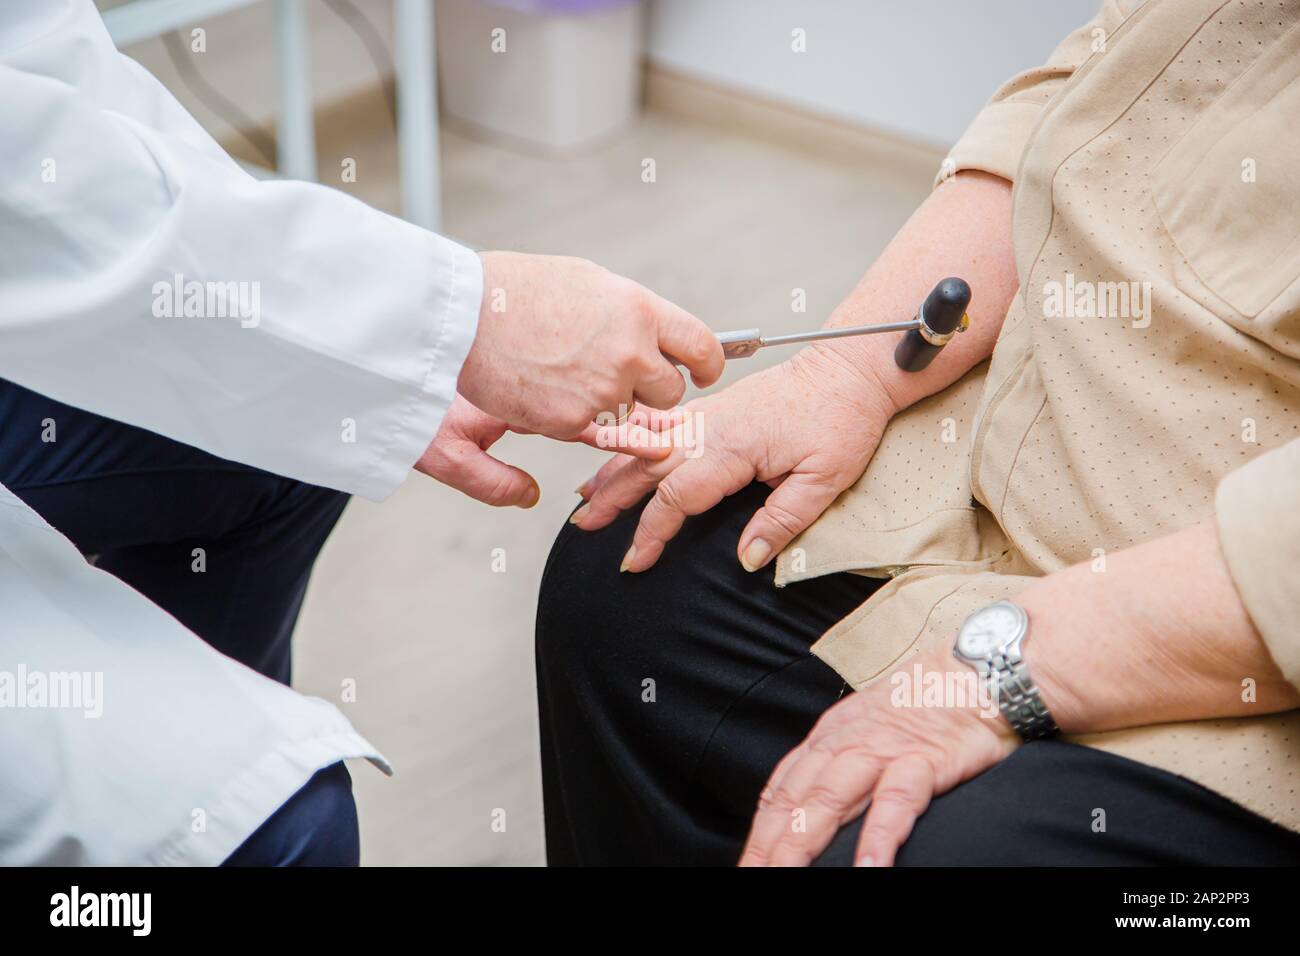 Chirurgo ortopedico esaminando il ginocchio reflex. Il medico controlla il riflesso fisiologico, il martello in prova. Il controllo medico dei riflessi Foto Stock